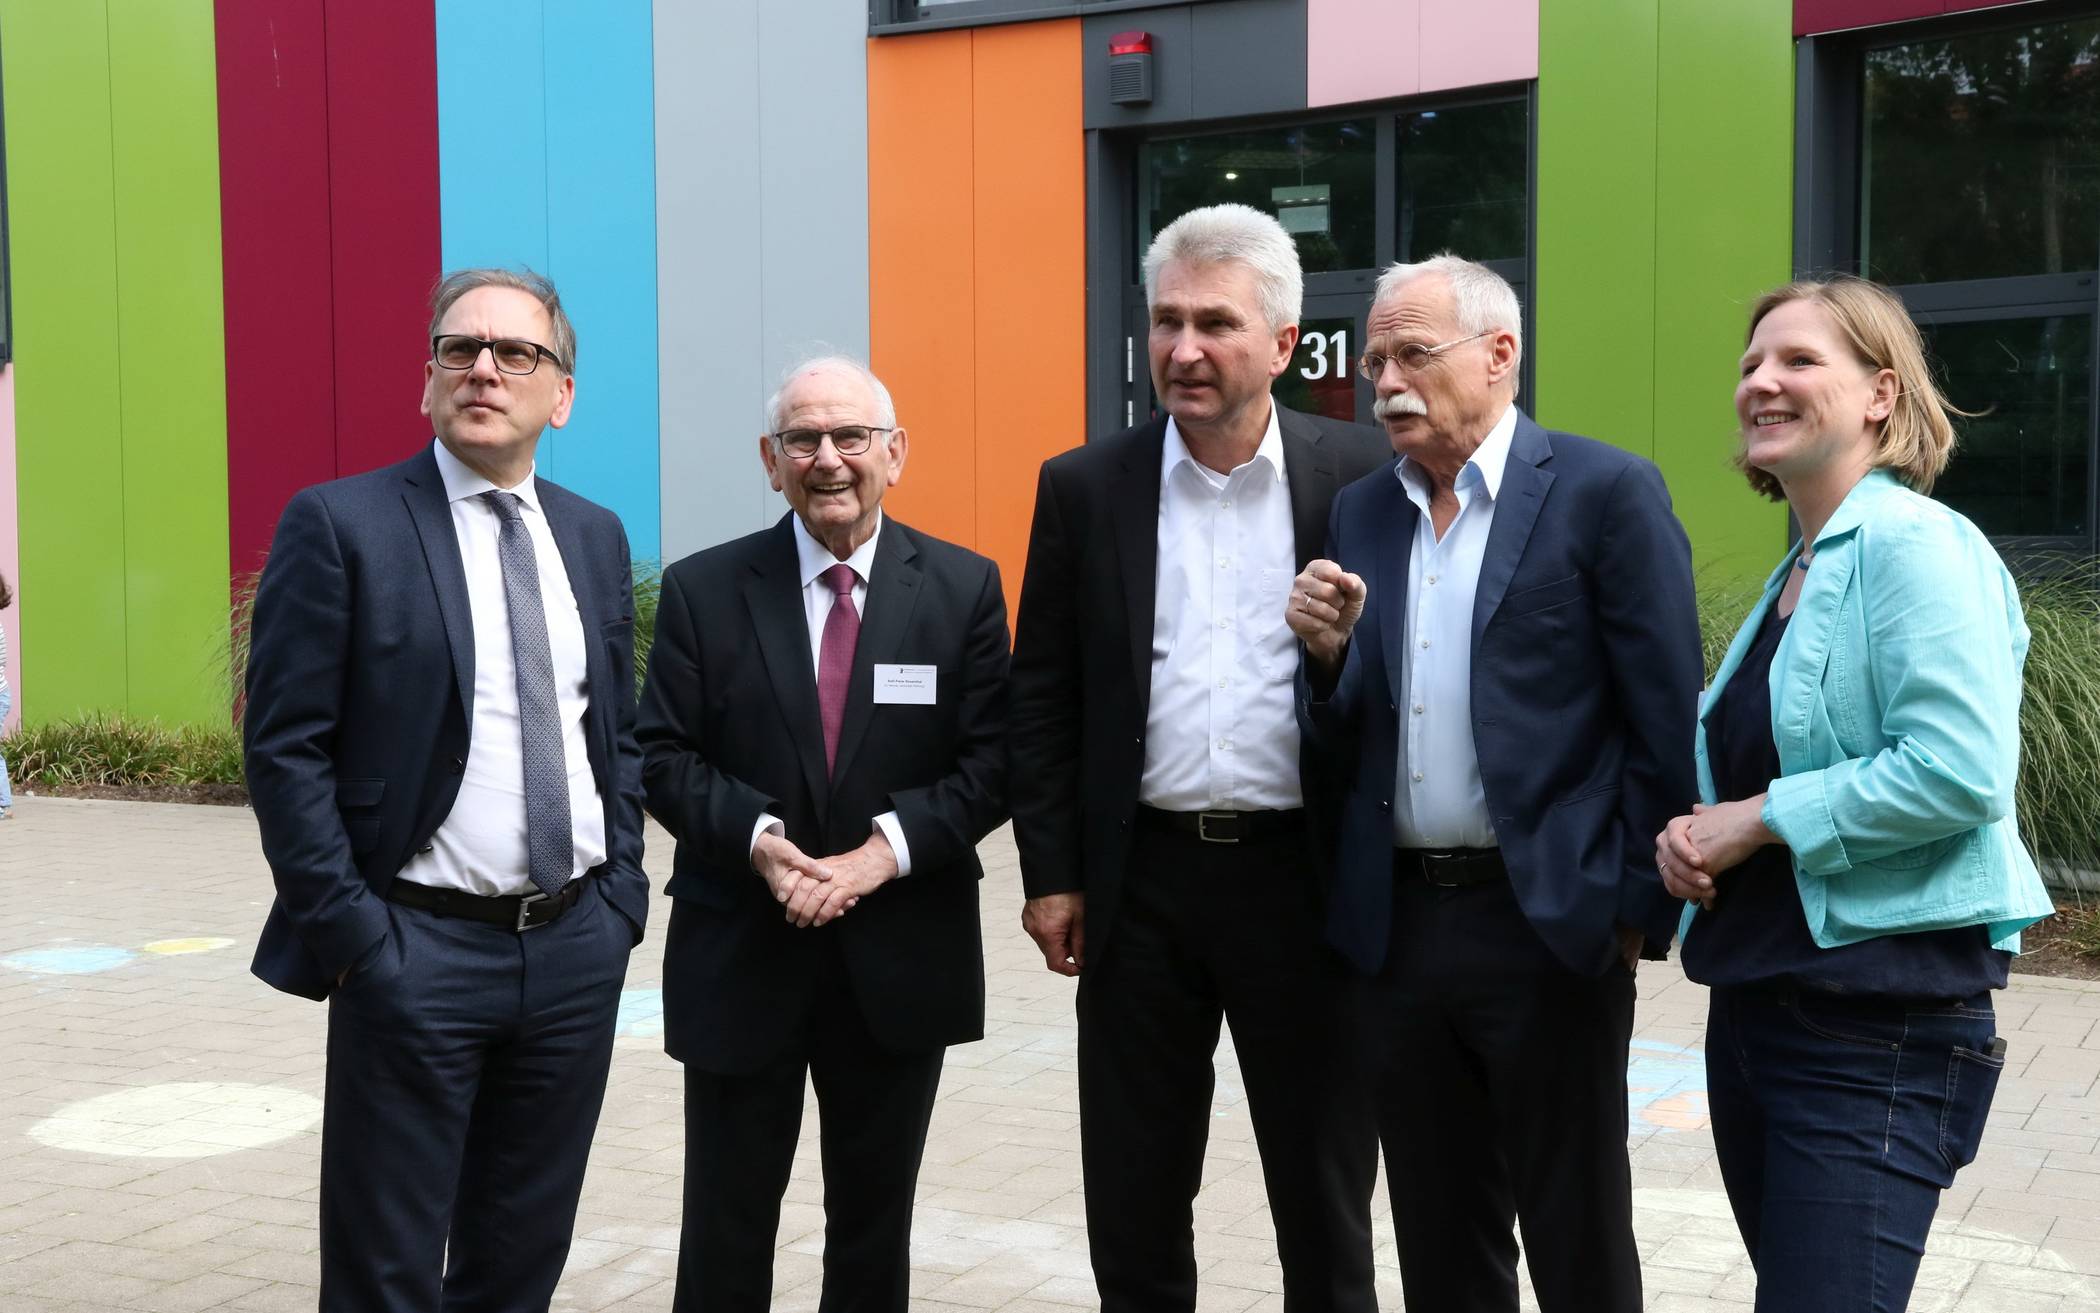  Rolf-Peter Rosenthal (2.v.li.) im Juli 2019 in seiner Funktion als Vorsitzender des kaufmännisch-organisatorischen Beirats der Junior Uni und Vorstandsmitglied der Jackstädt-Stiftung bei einem Besuch von NRW-Minister Prof. Dr. Andreas Pinkwart (Mitte) in Wuppertal. 